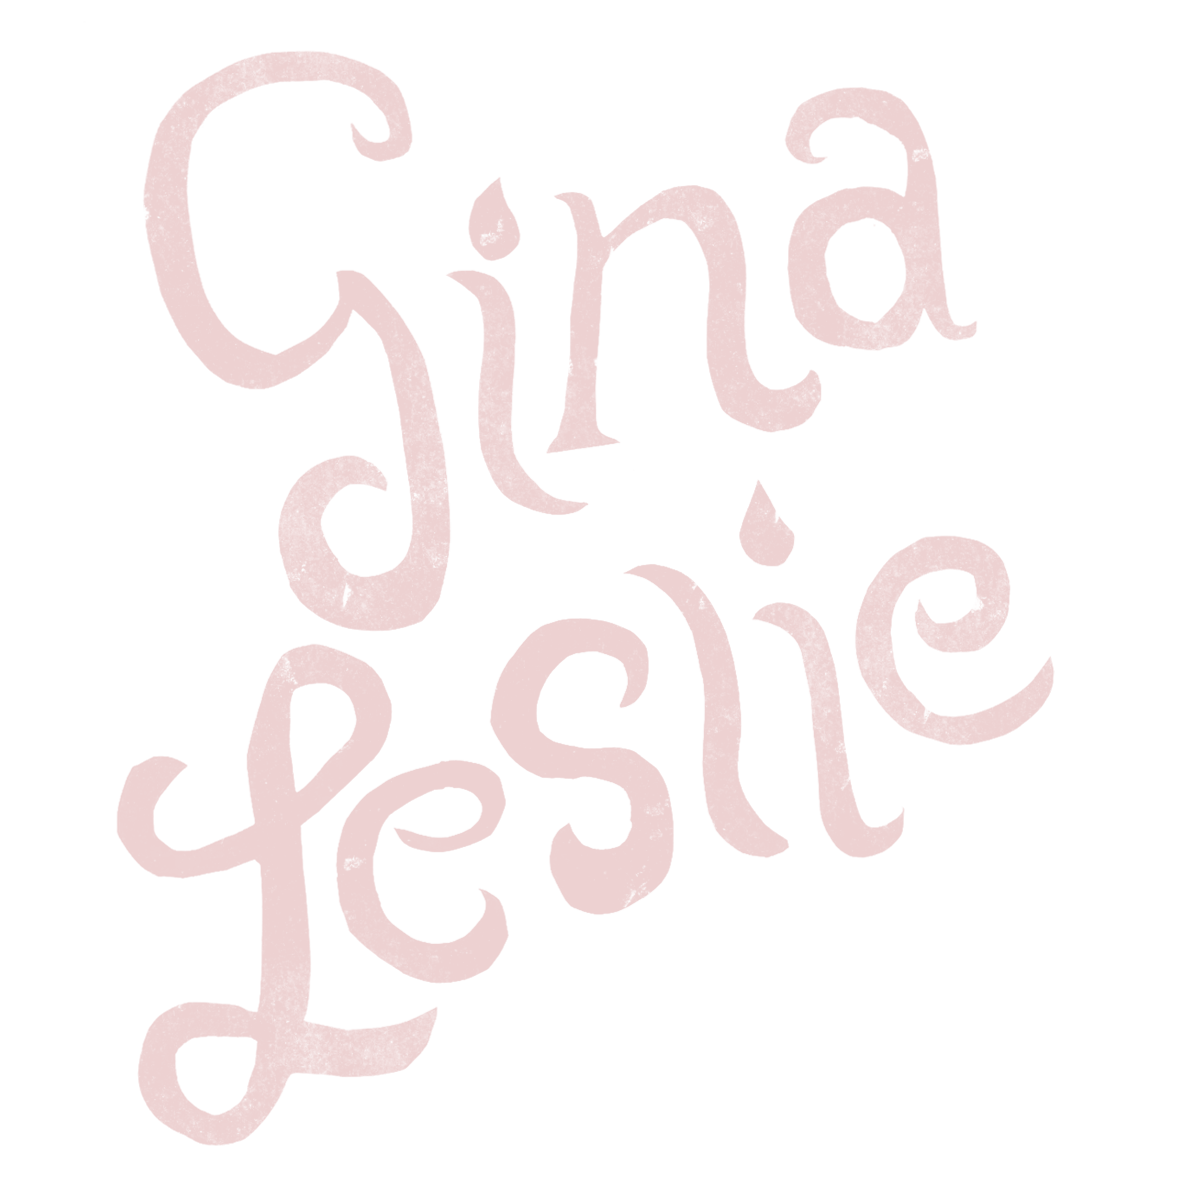 Gina Leslie